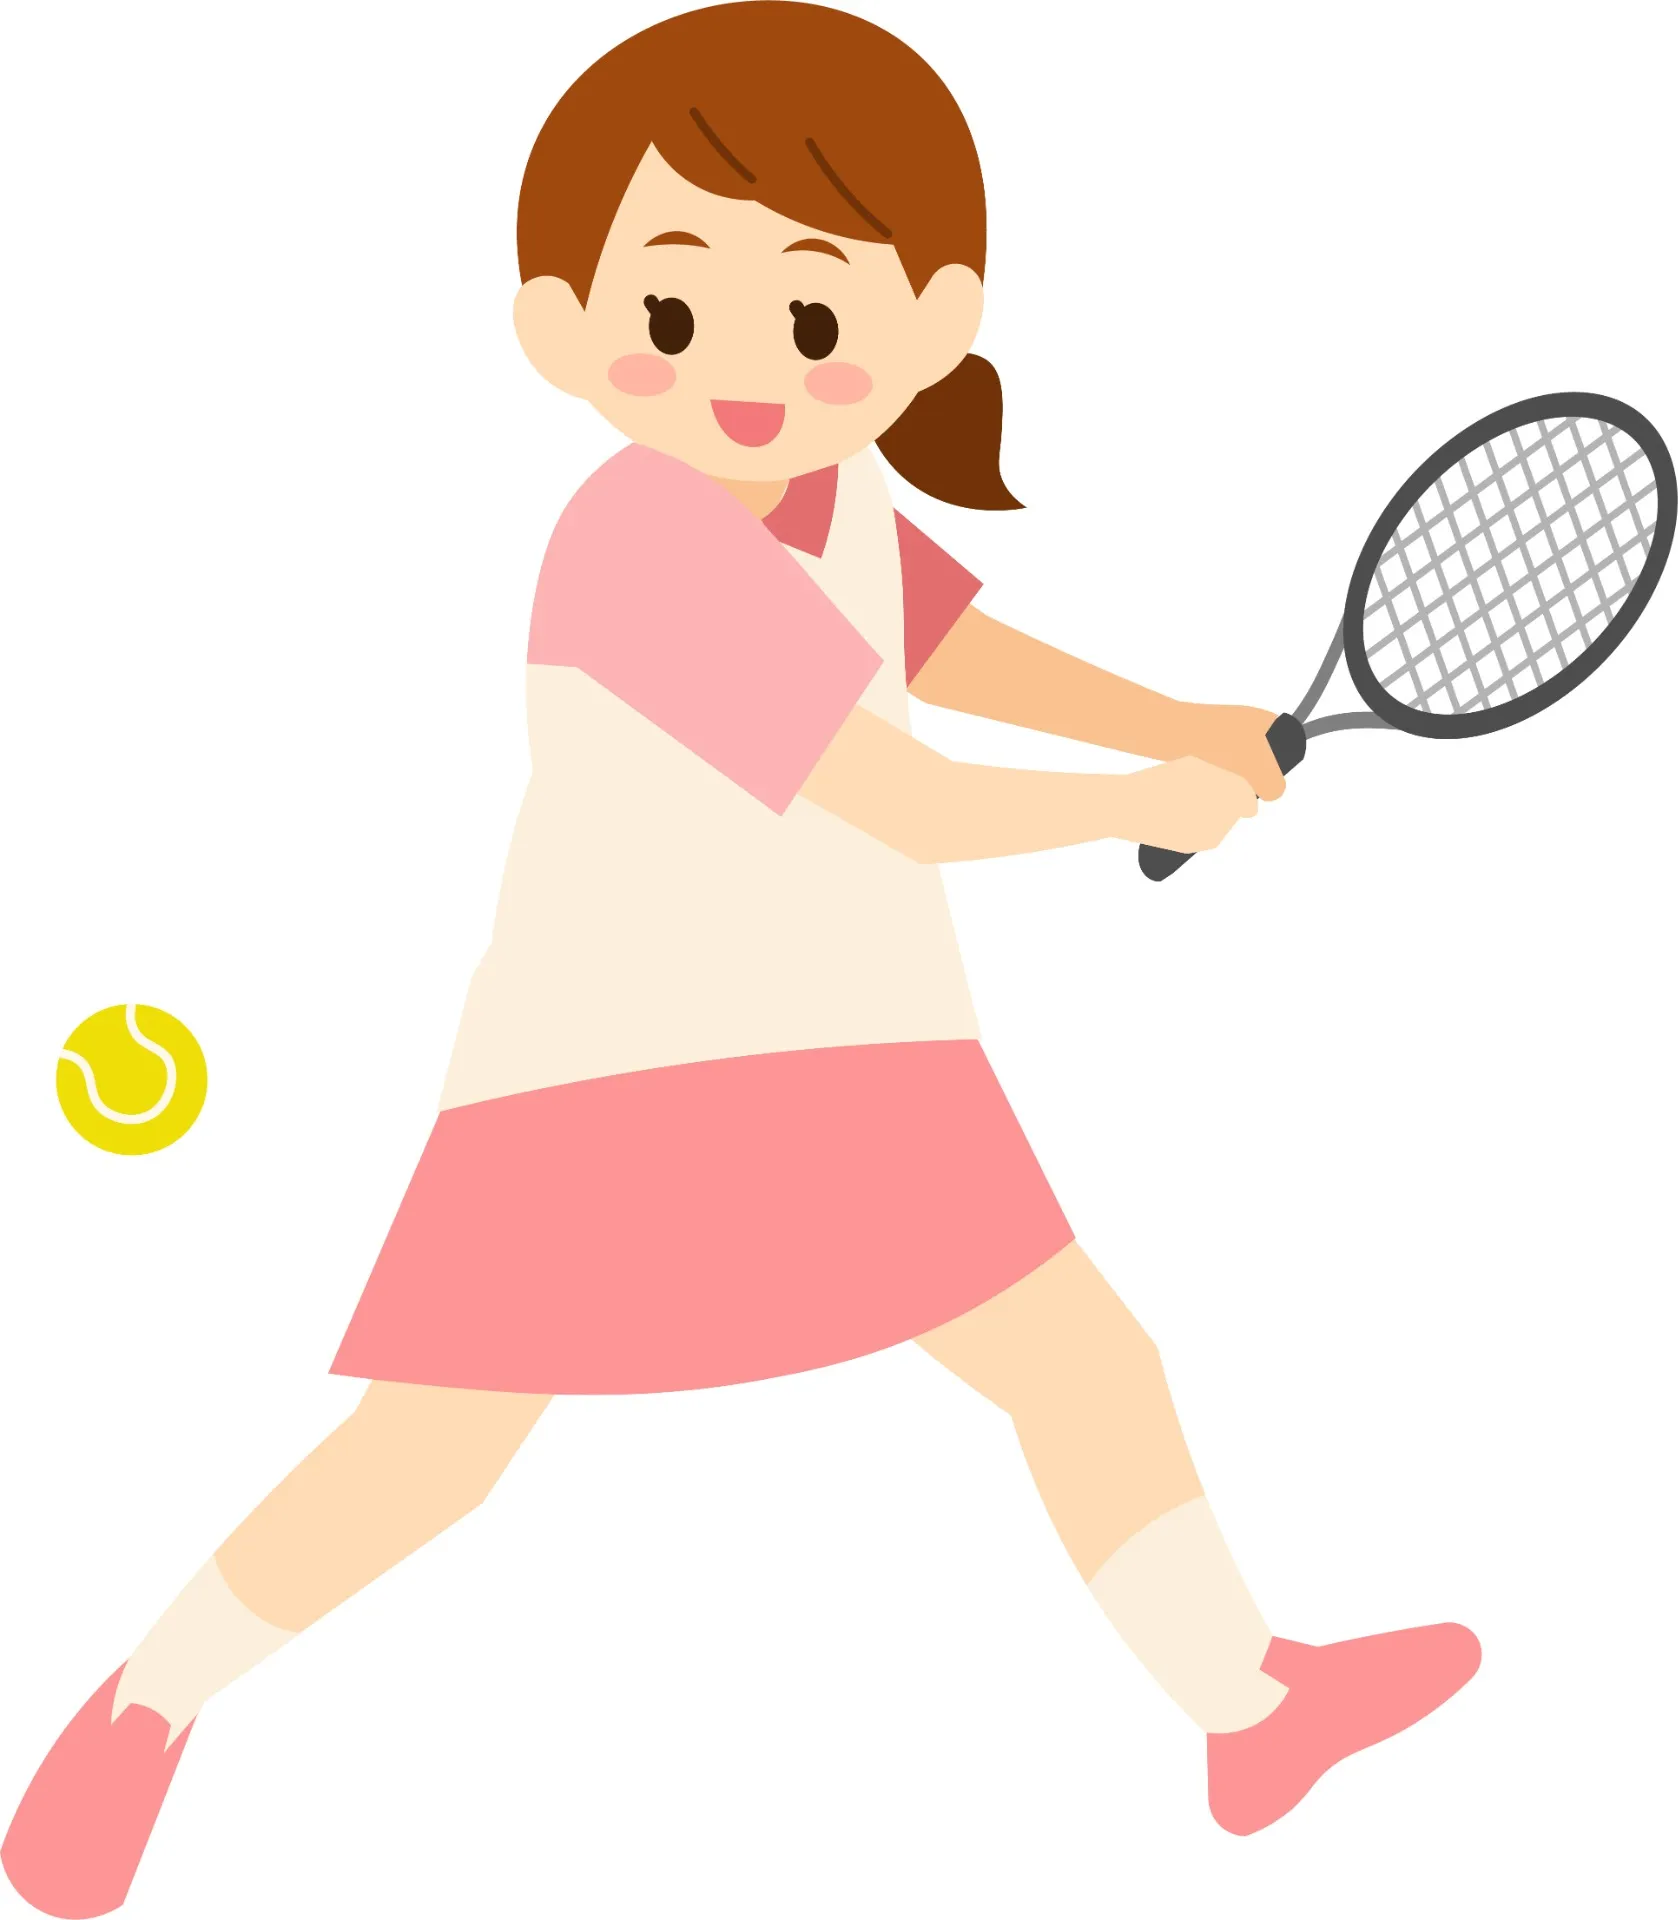 好きなテニスを続けたくて、外反母趾を歩き方から改善します。｜練馬区土支田さくら整体